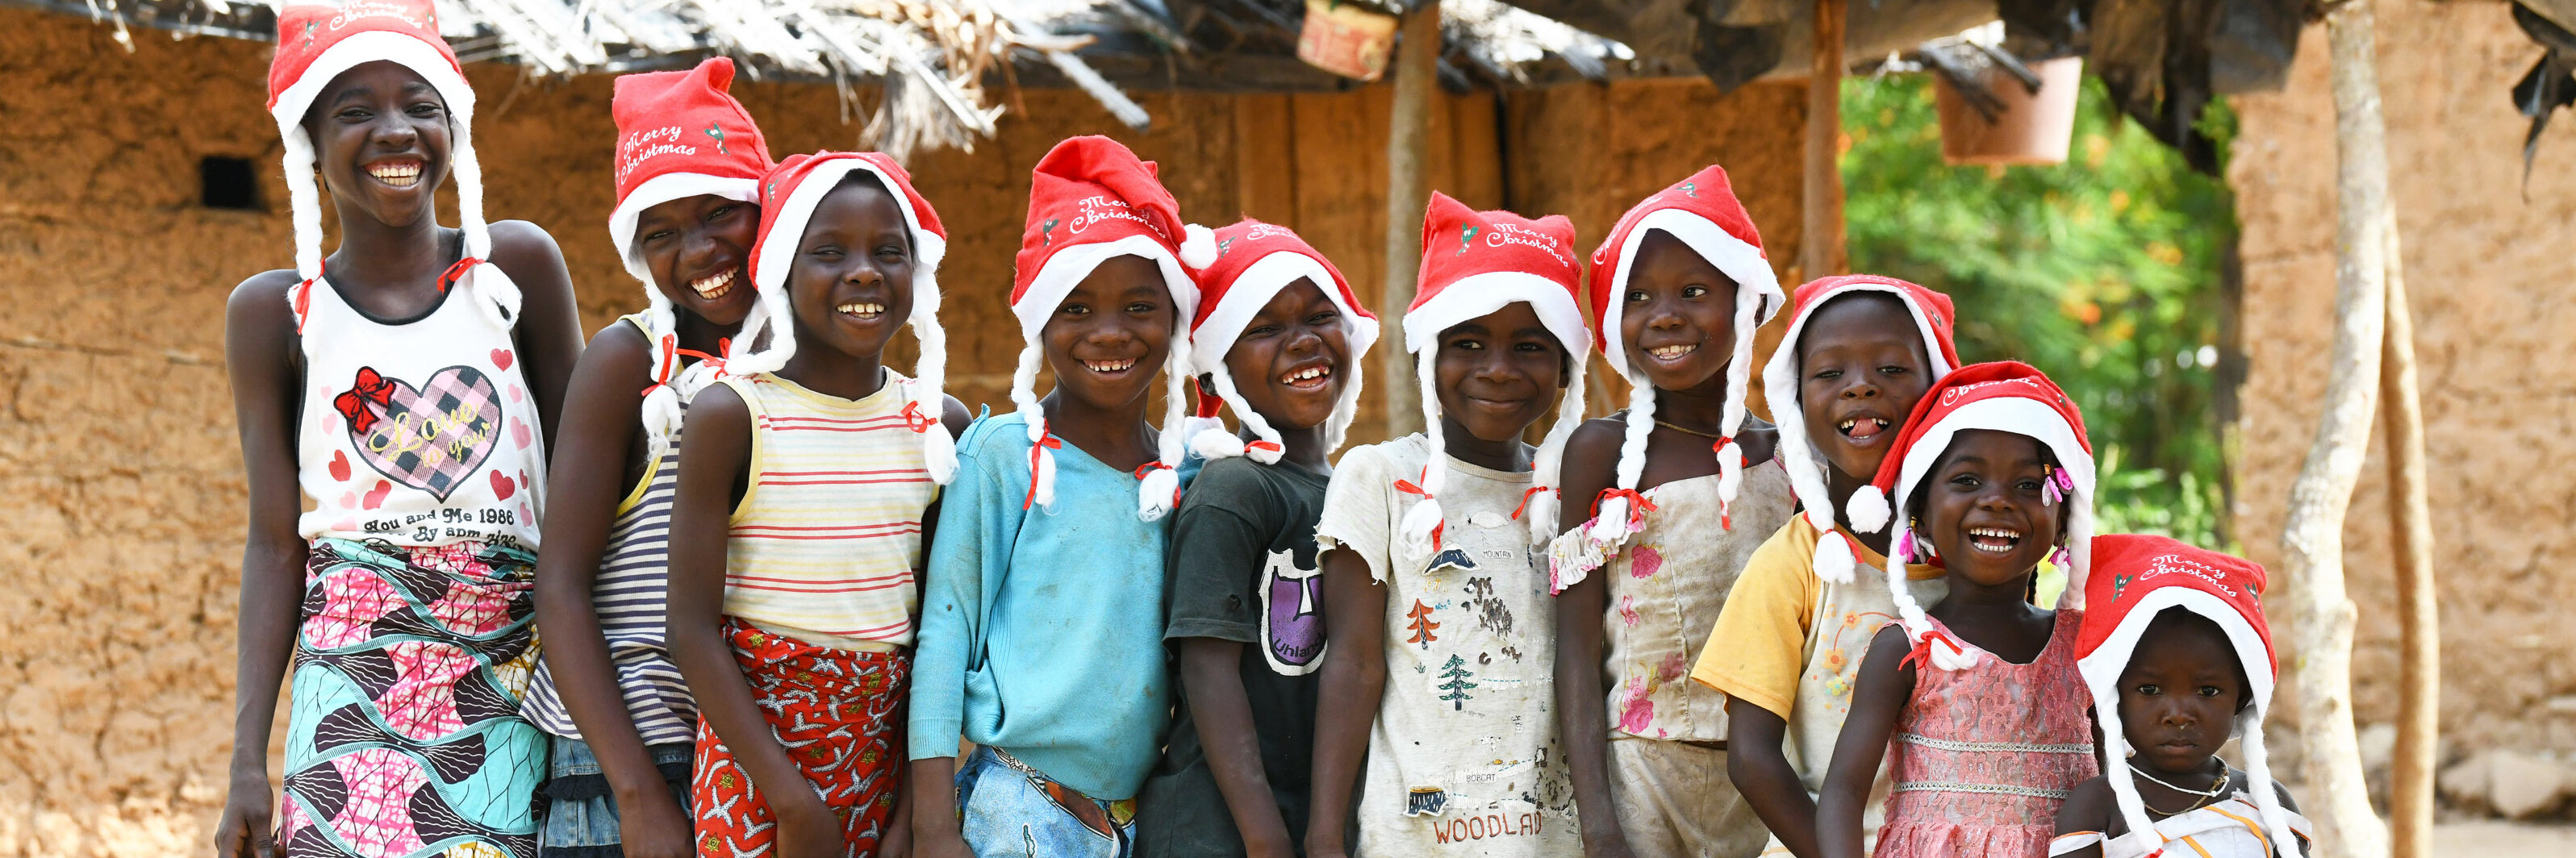 Kinder in Afrika feiern Weihnachten